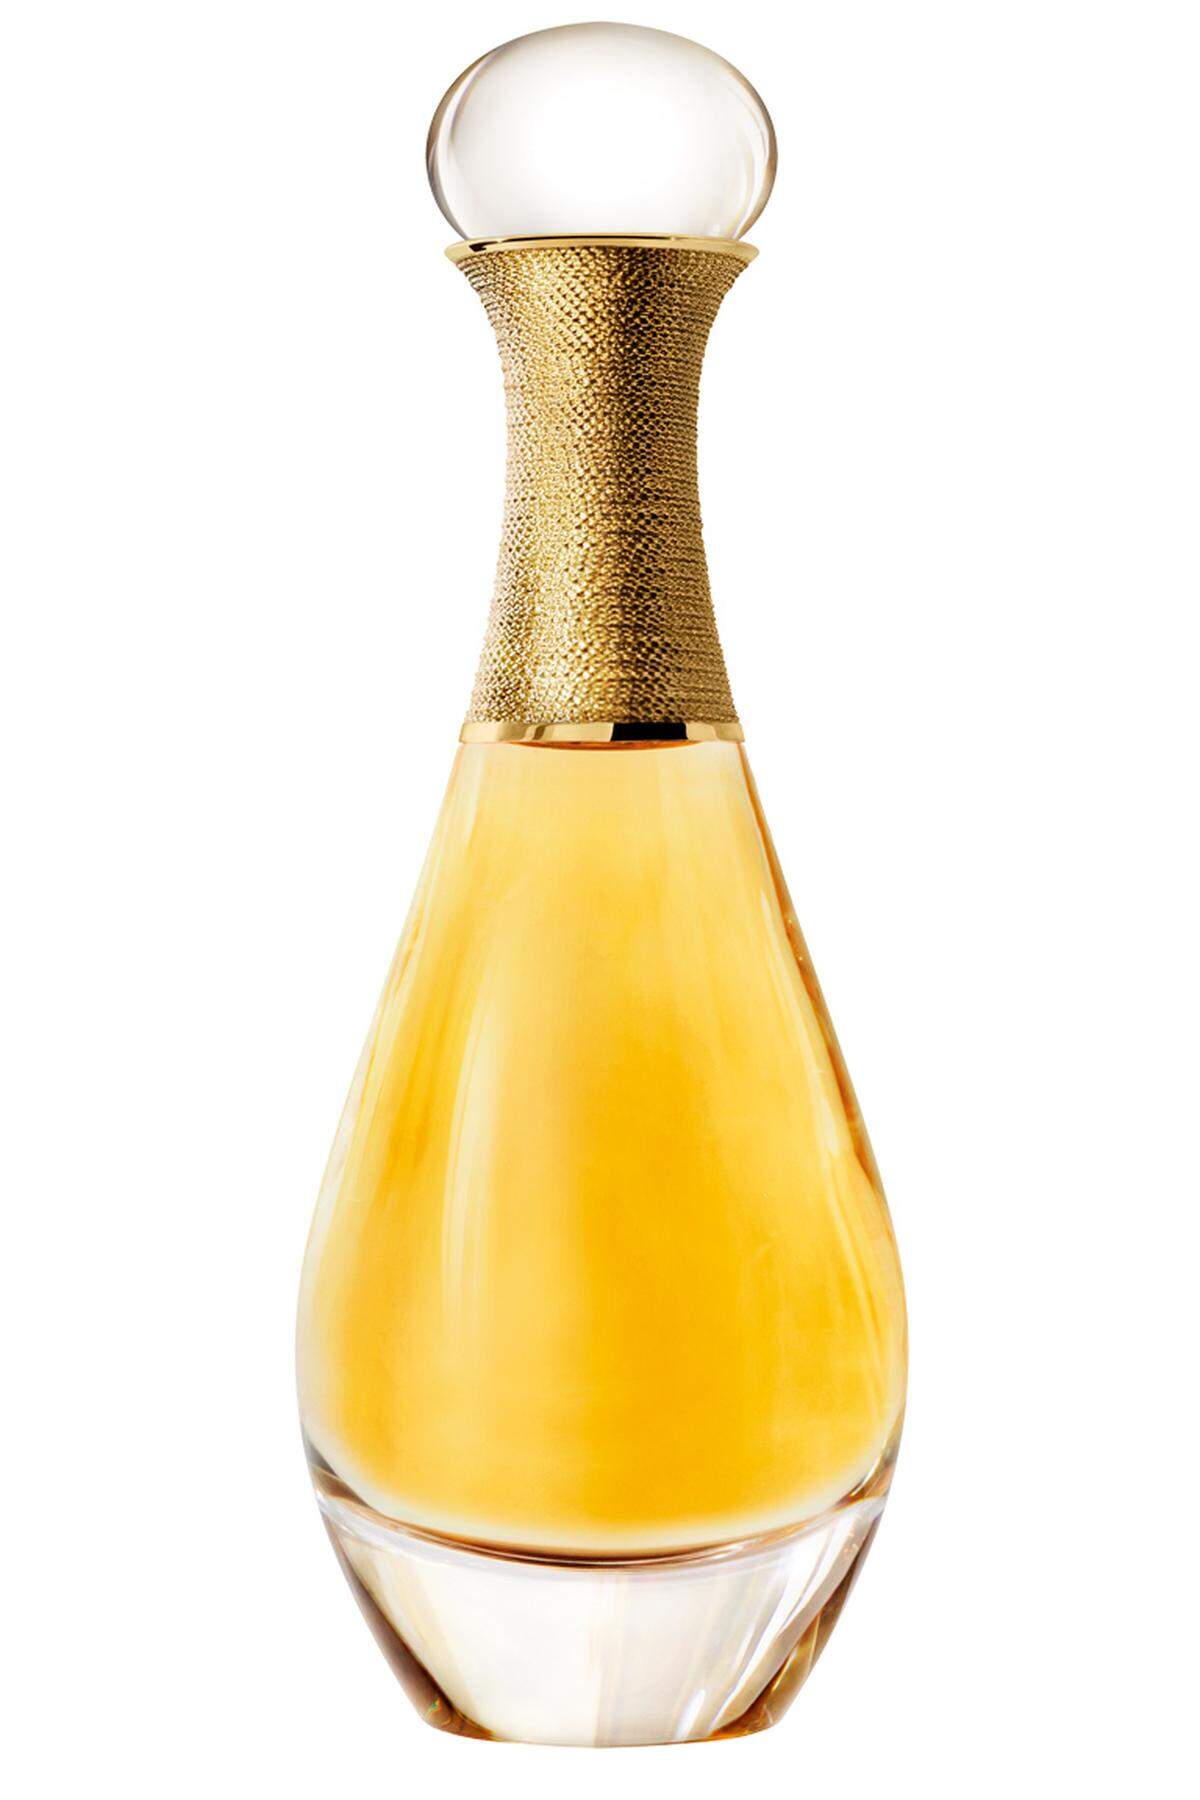 „J’adore l’or“ von Dior, Essence de Parfum, 40 ml, um 126 Euro